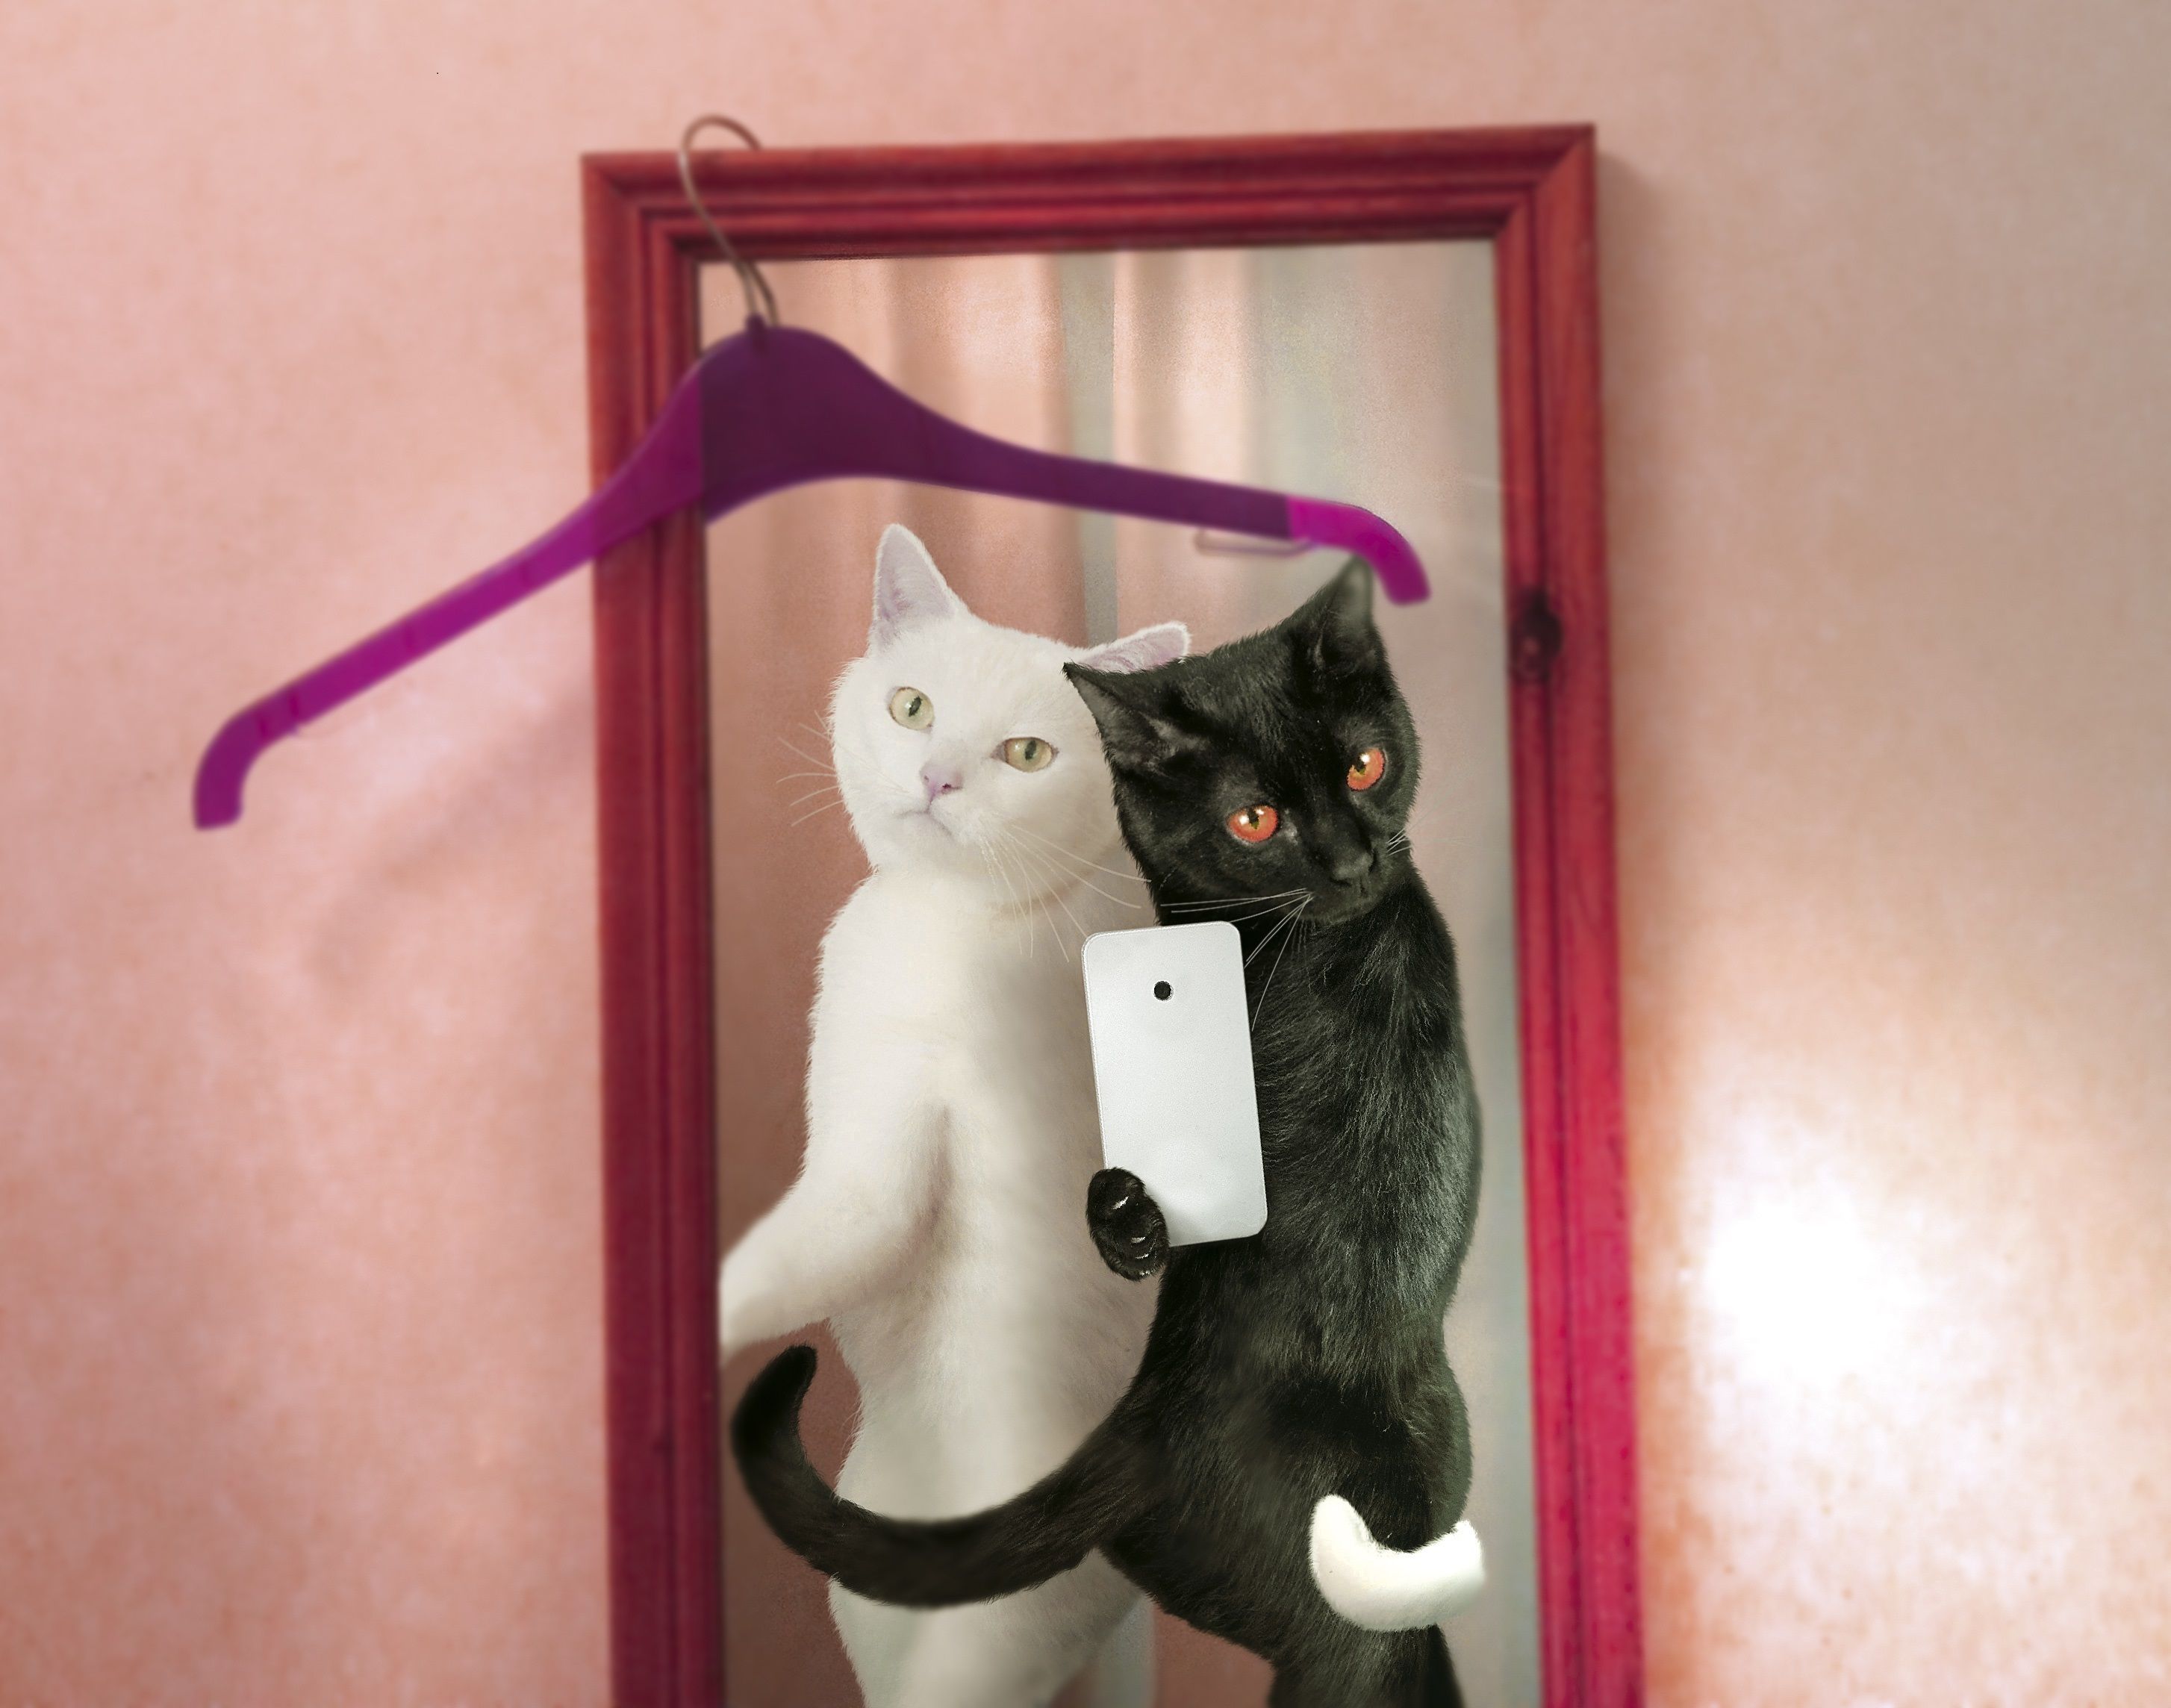 Descarga gratuita de fondo de pantalla para móvil de Gatos, Gato, Humor.